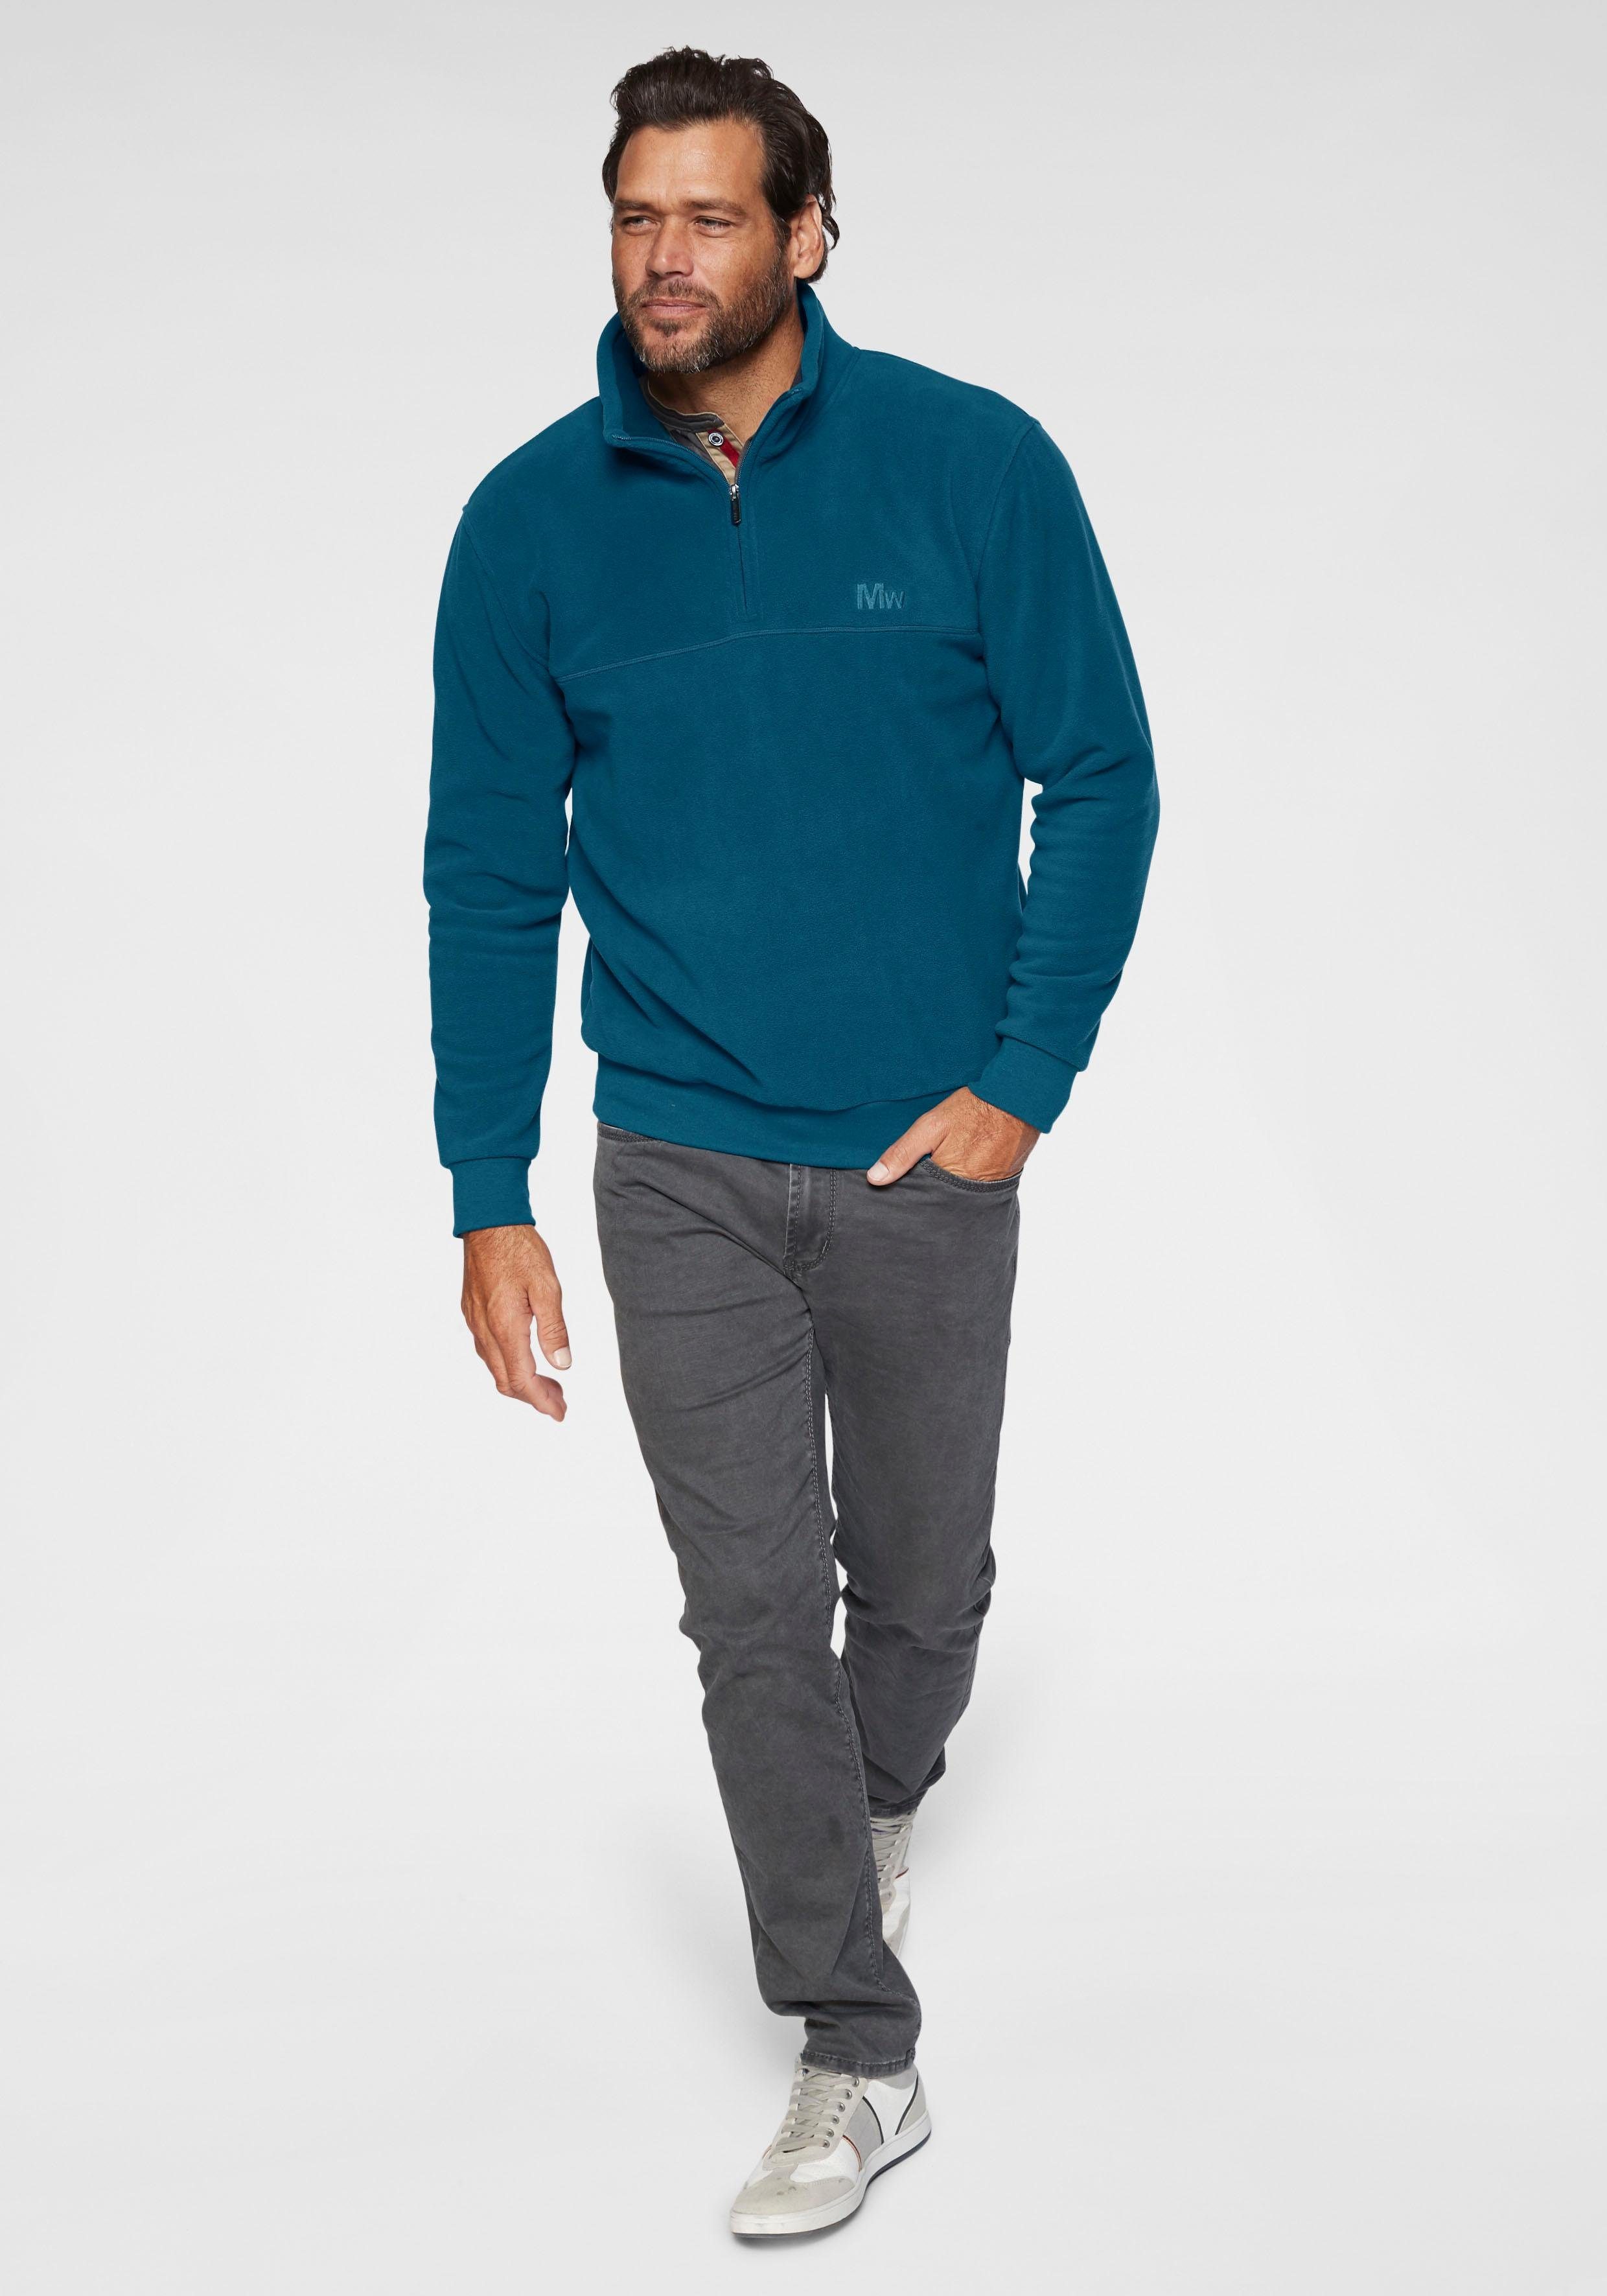 World kontrastfarbenen Henleyshirt mit Man's grau Nähten